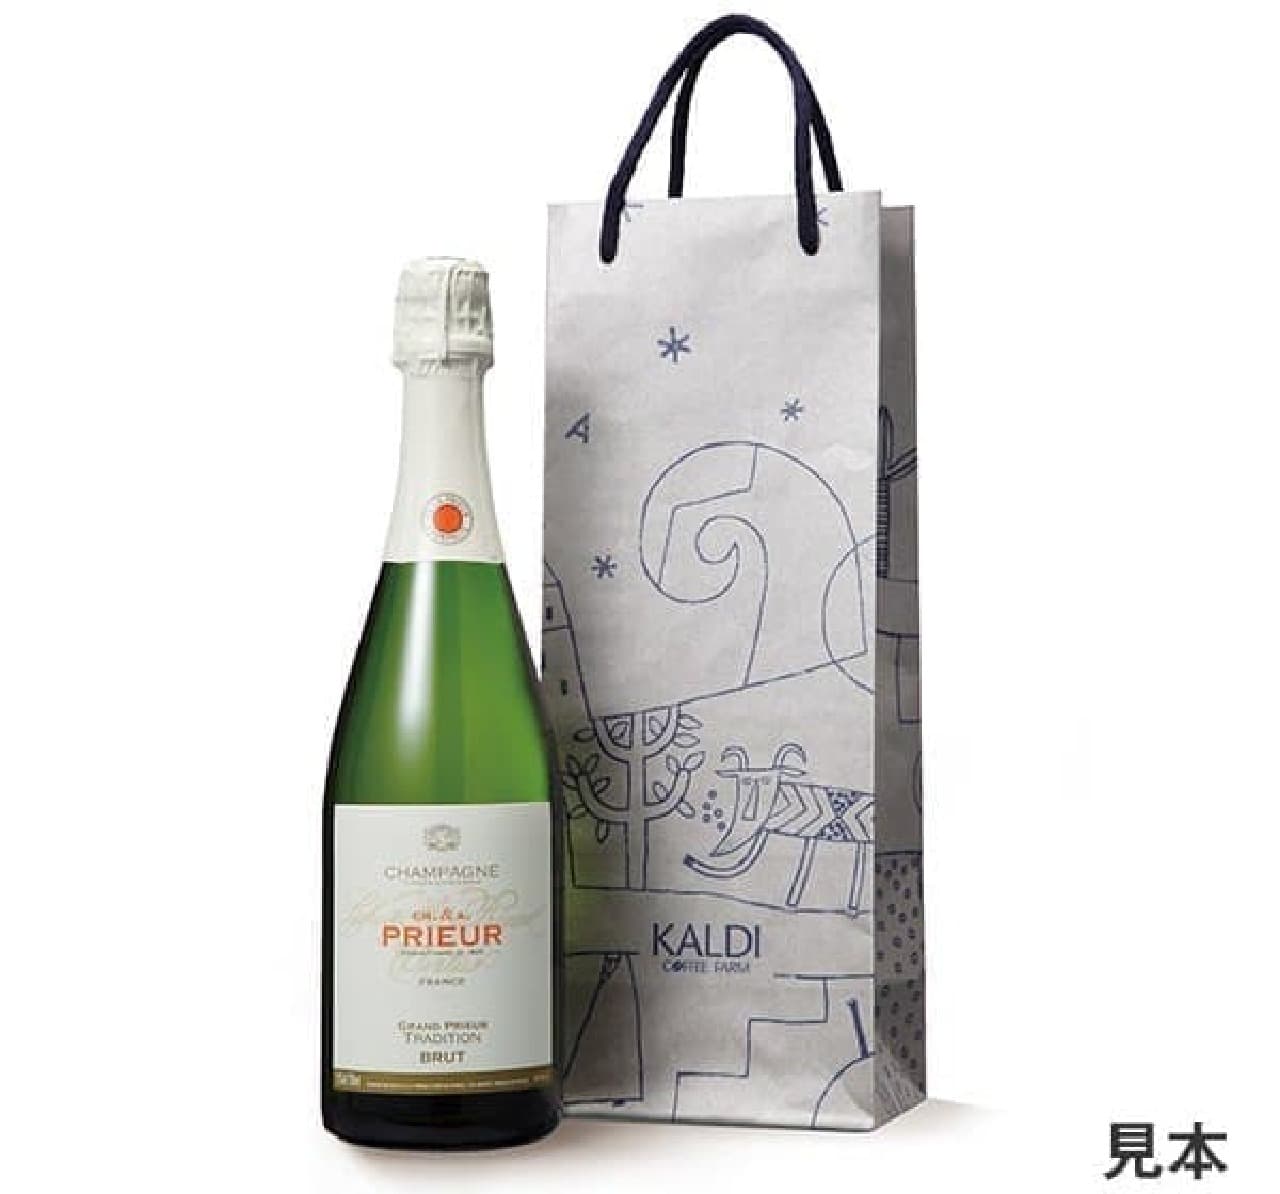 KALDI wine lucky bag